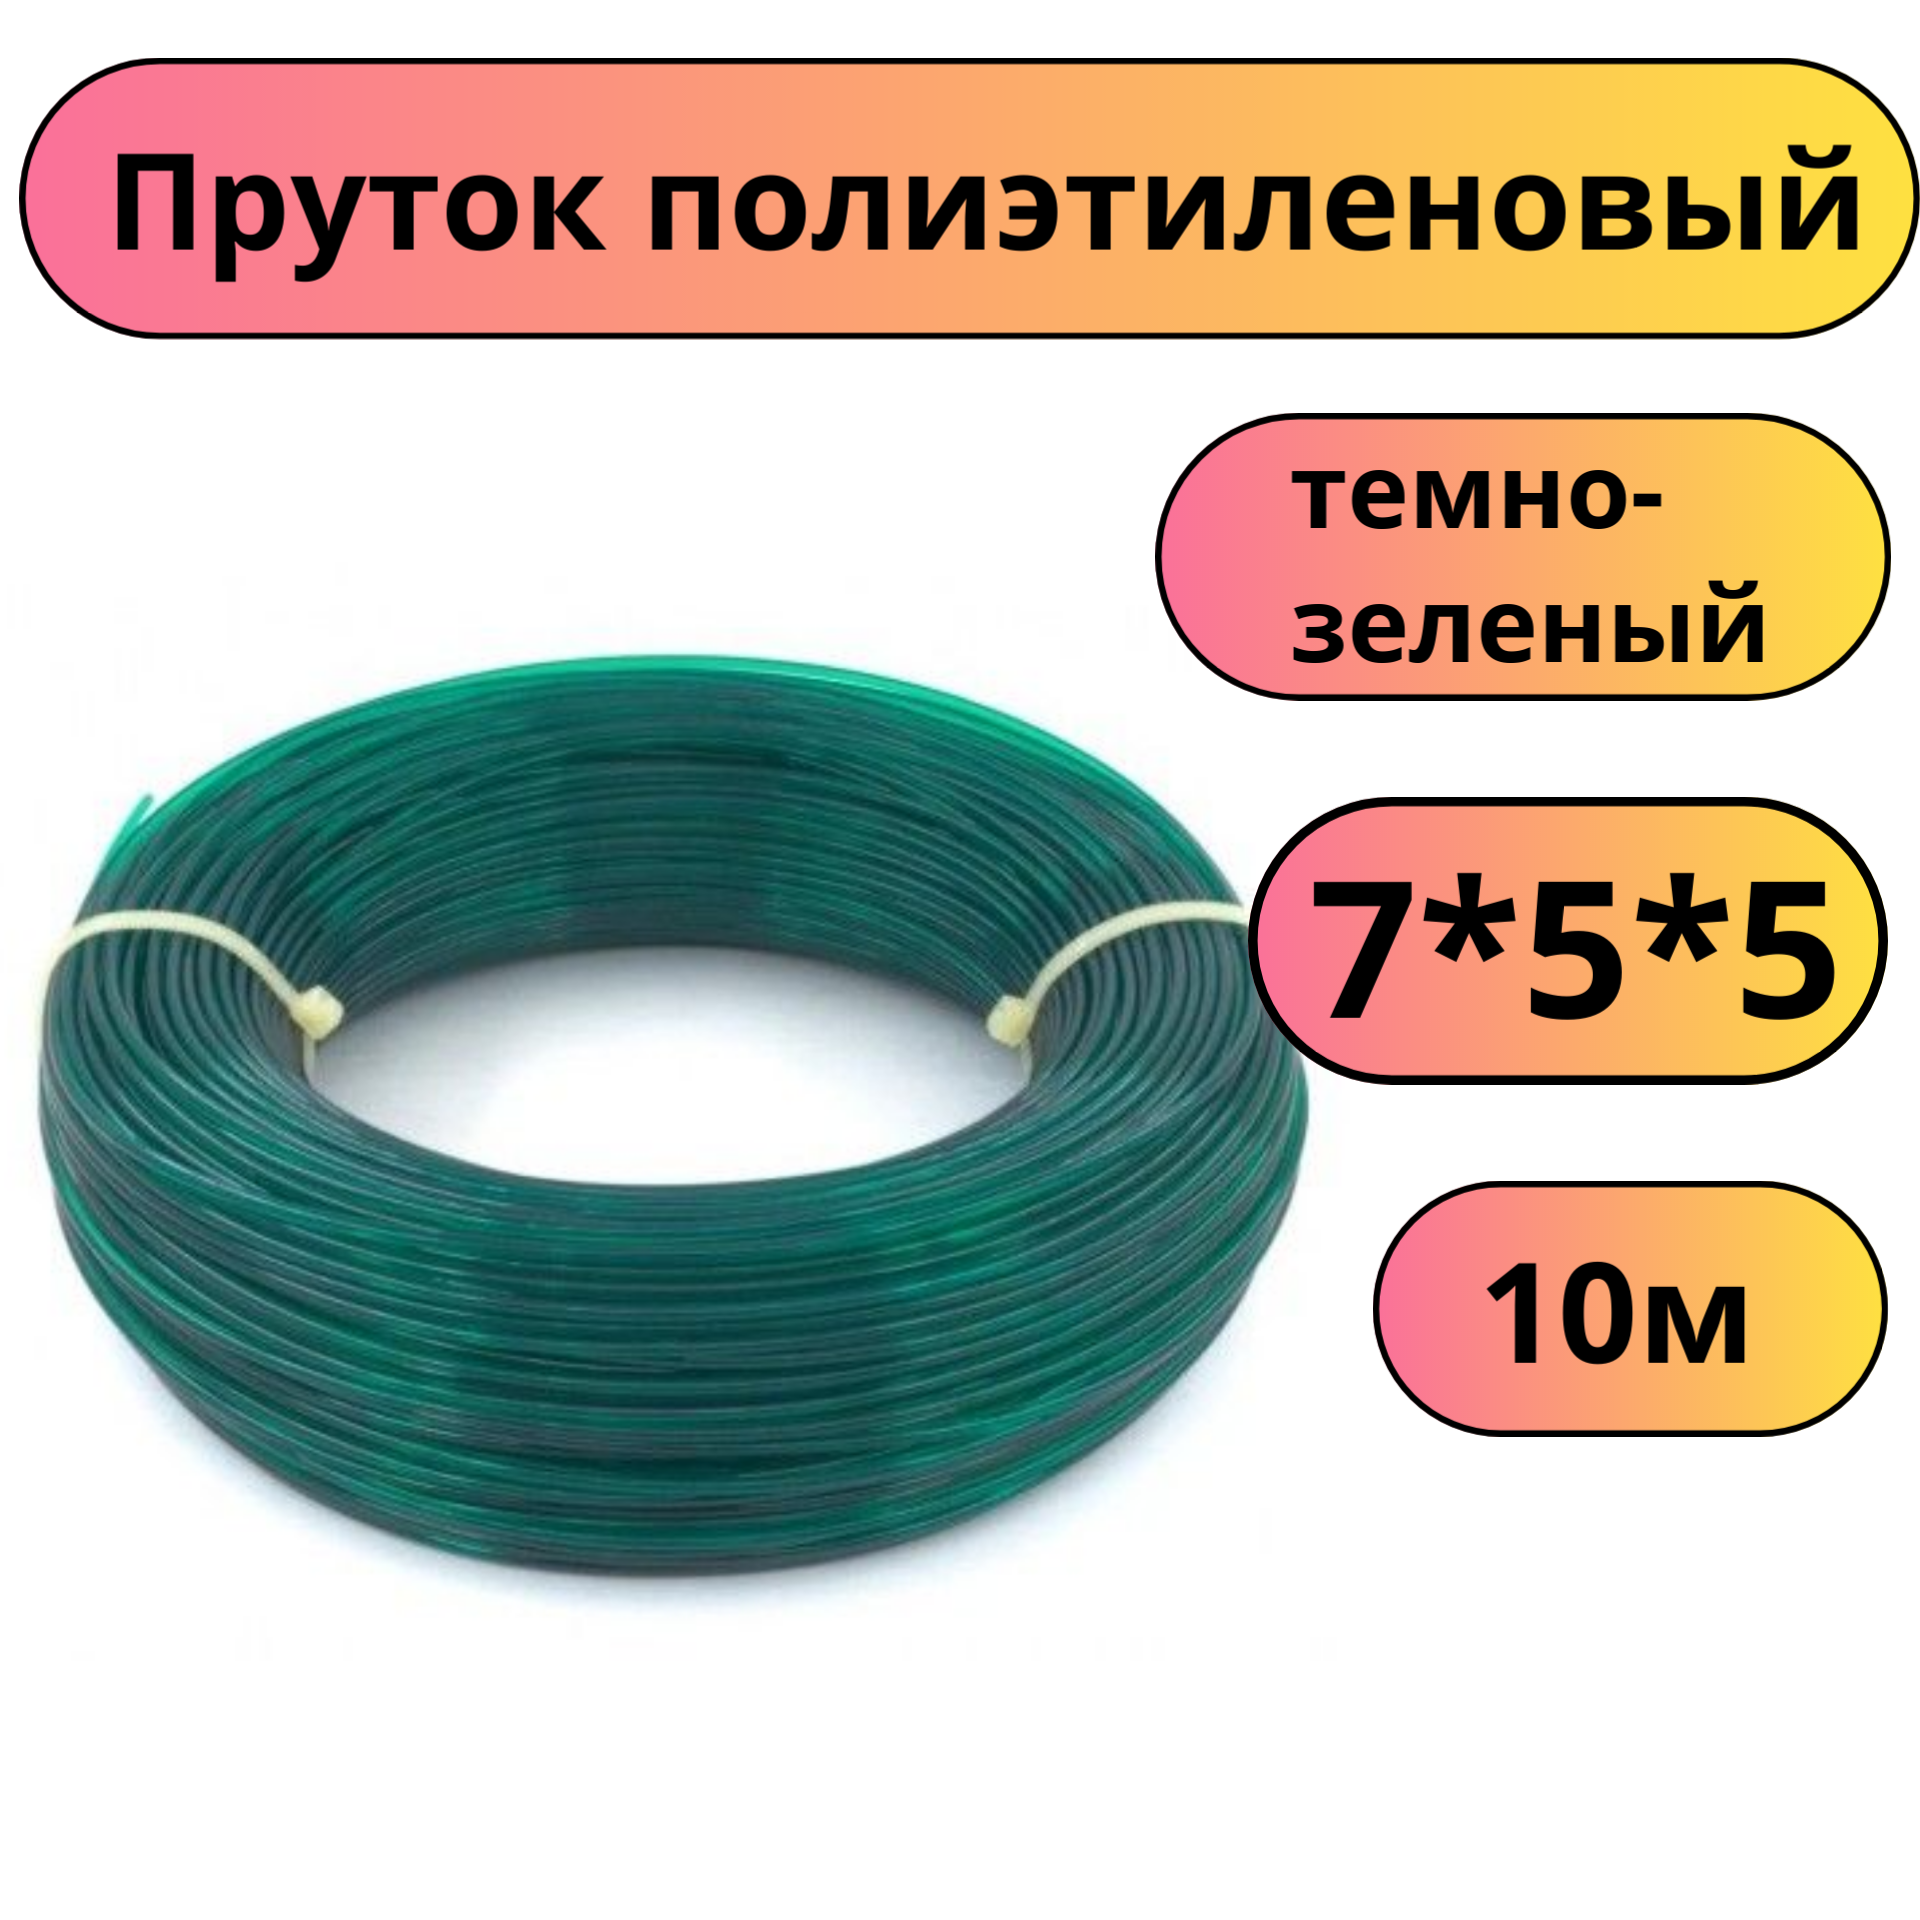 Пруток присадочный для сварки ПНД диаметр 4 мм длина 10 м зеленый круглый